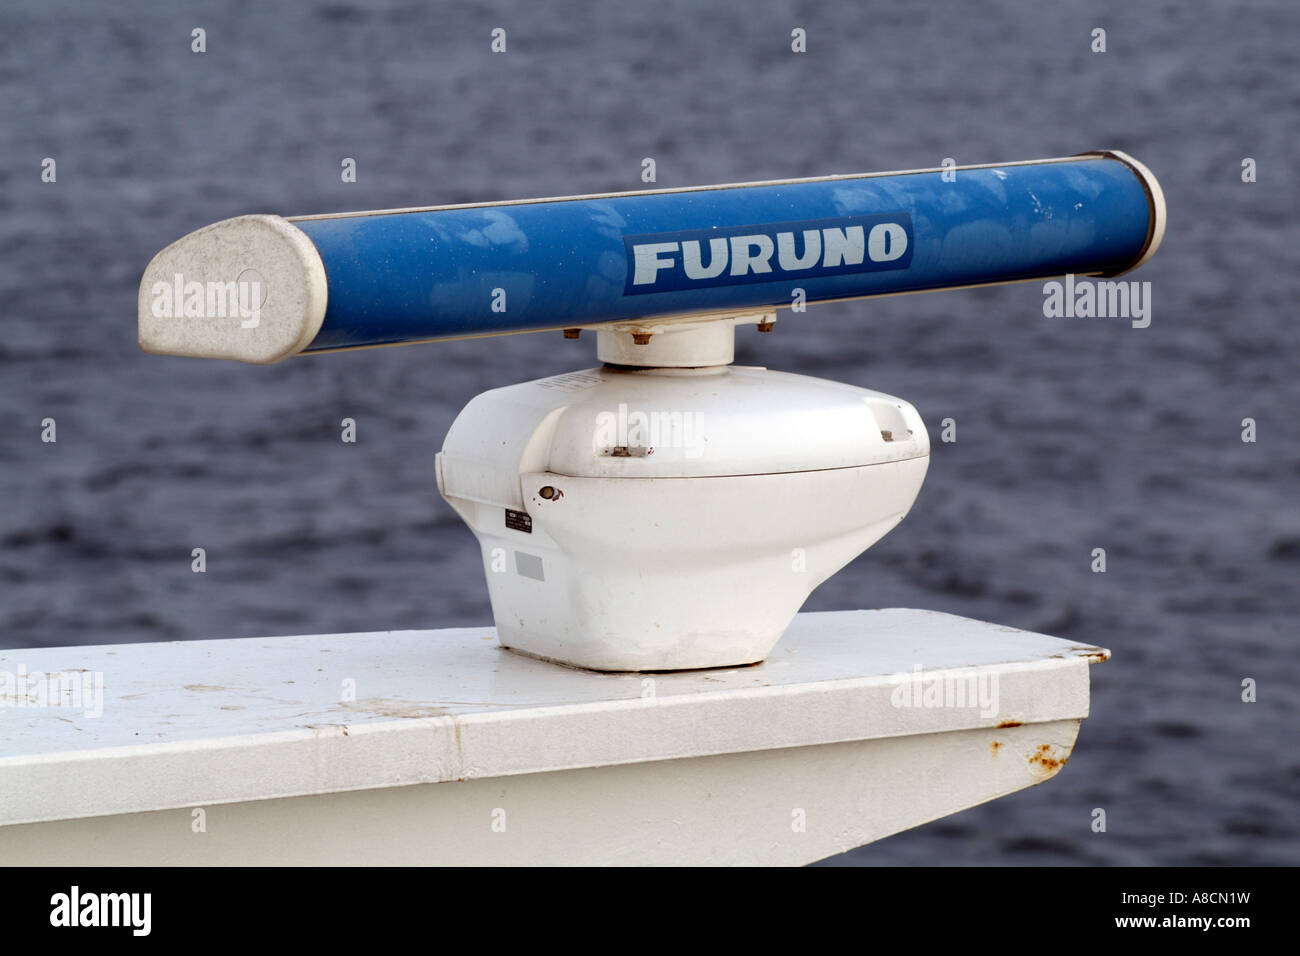 Le navi della strumentazione Furuno Foto Stock